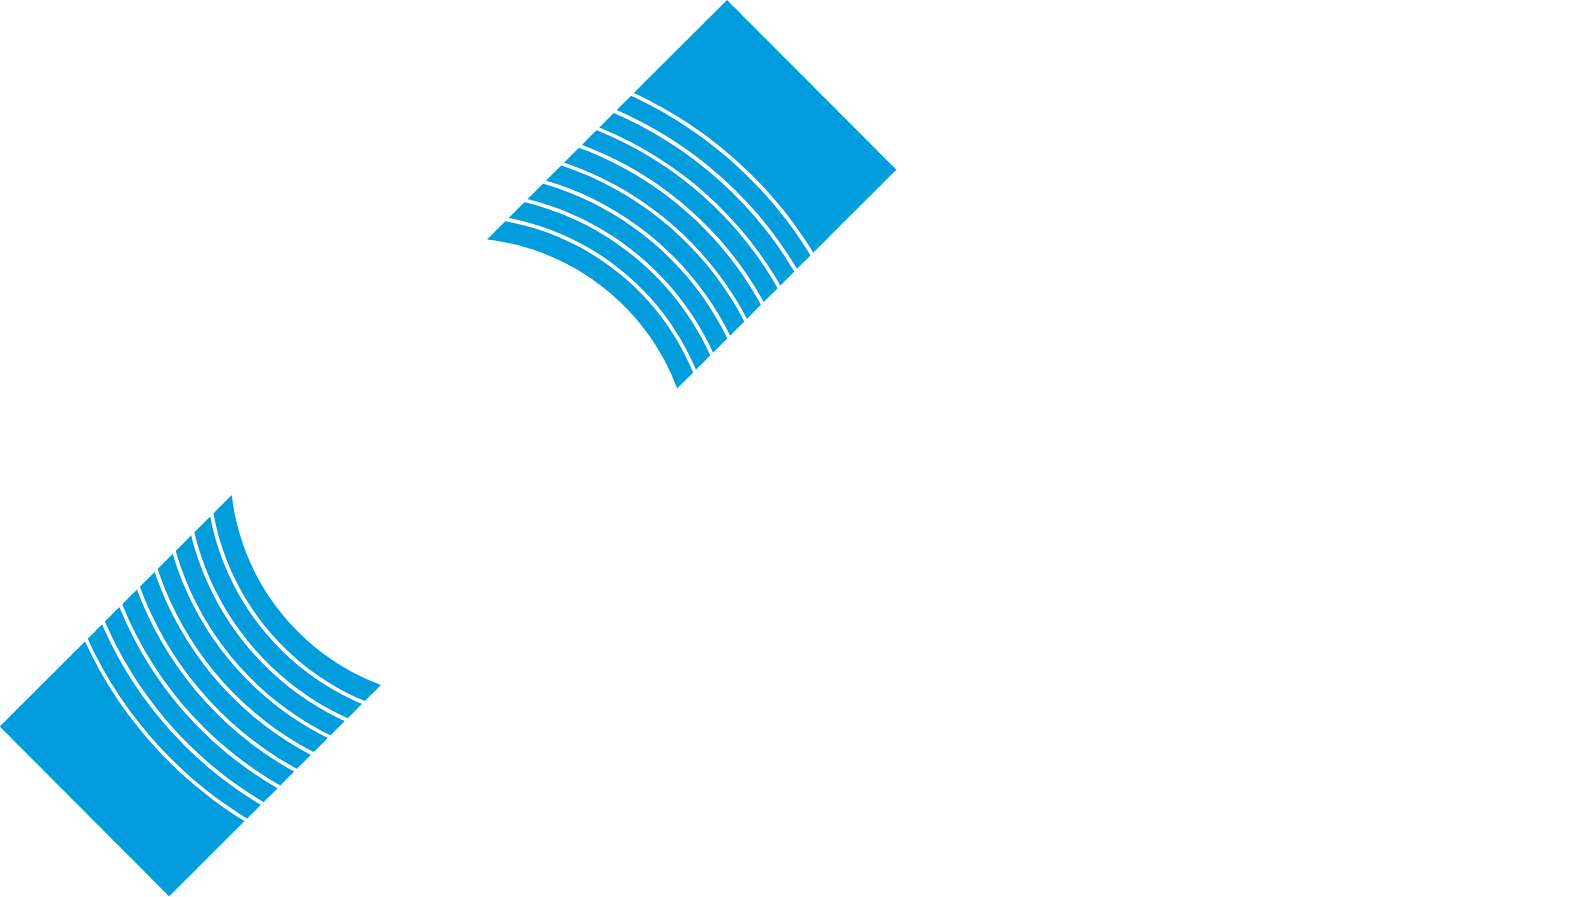 Reservoir Media logo large for dark backgrounds (transparent PNG)